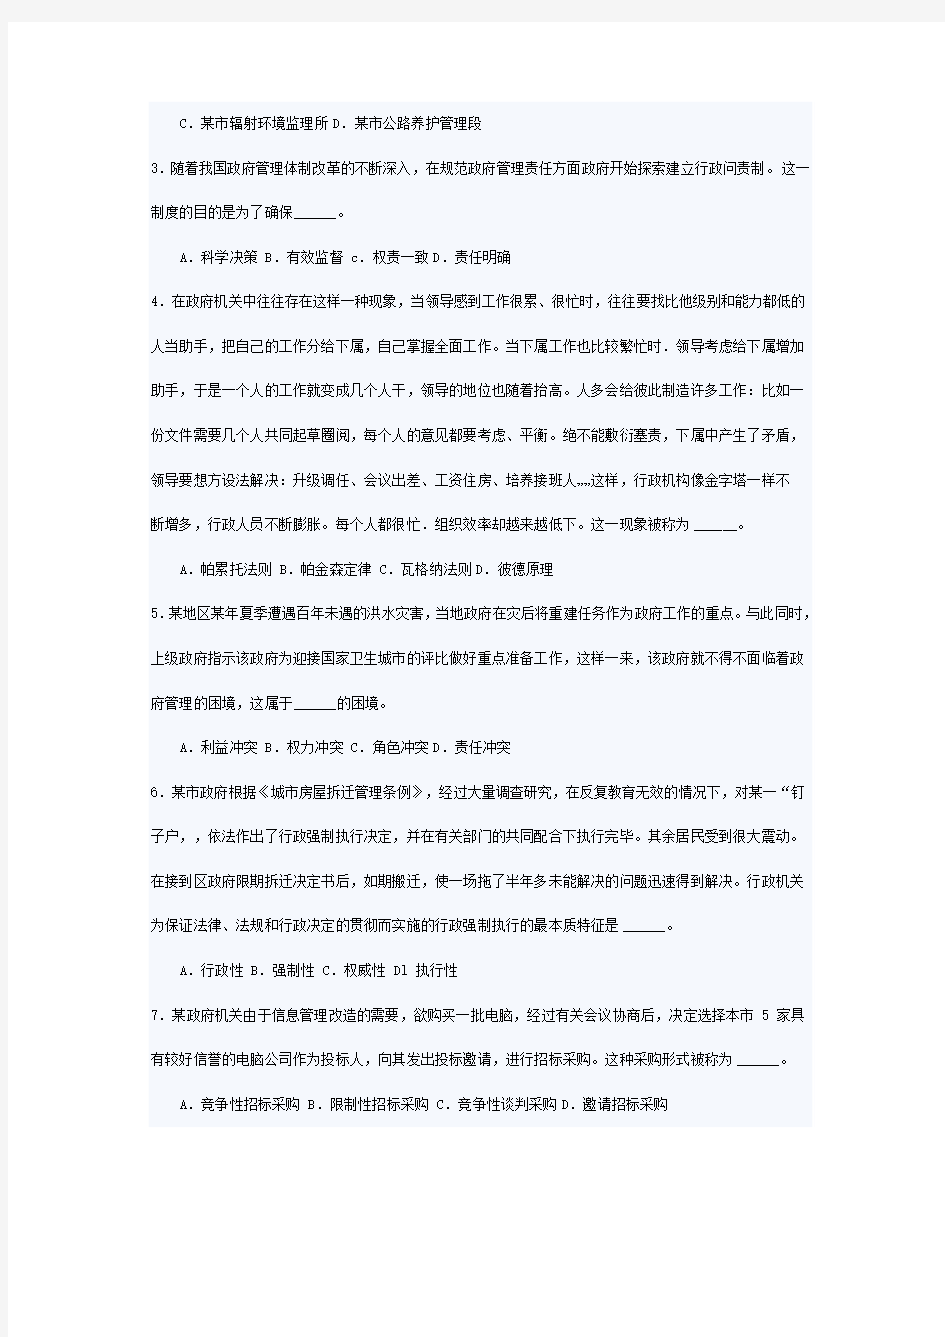 上海市2008年录用公务员专业科目考试